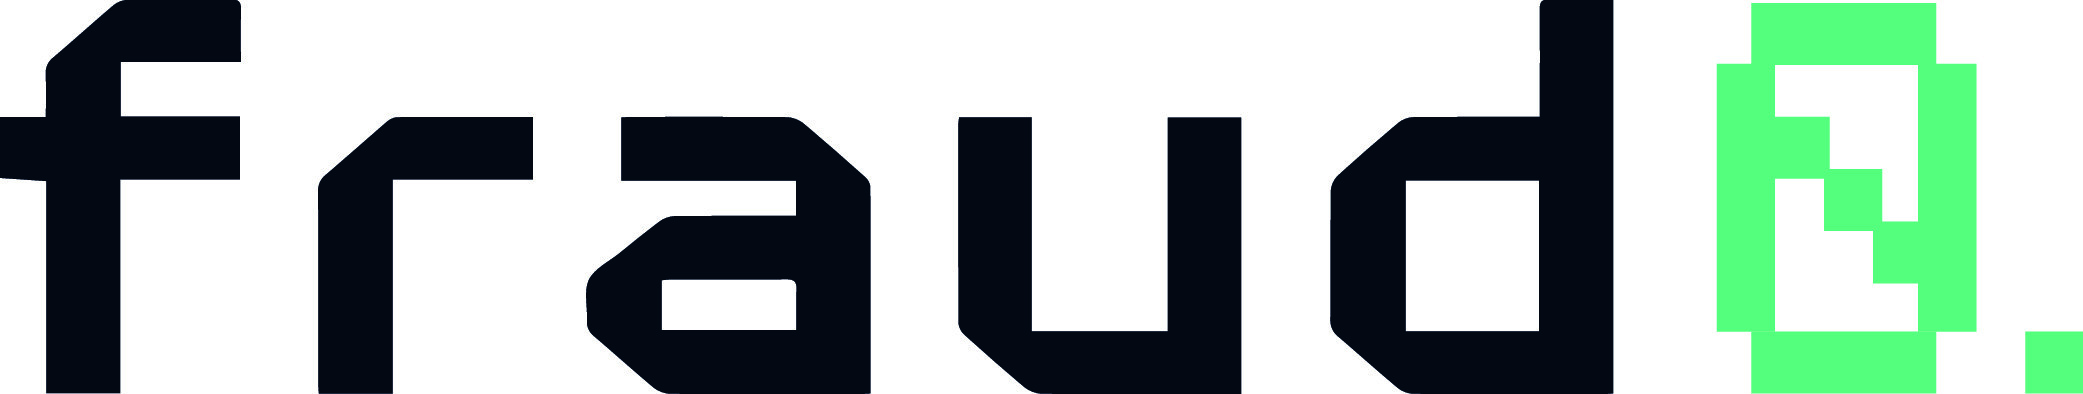 fraud0.com-logo